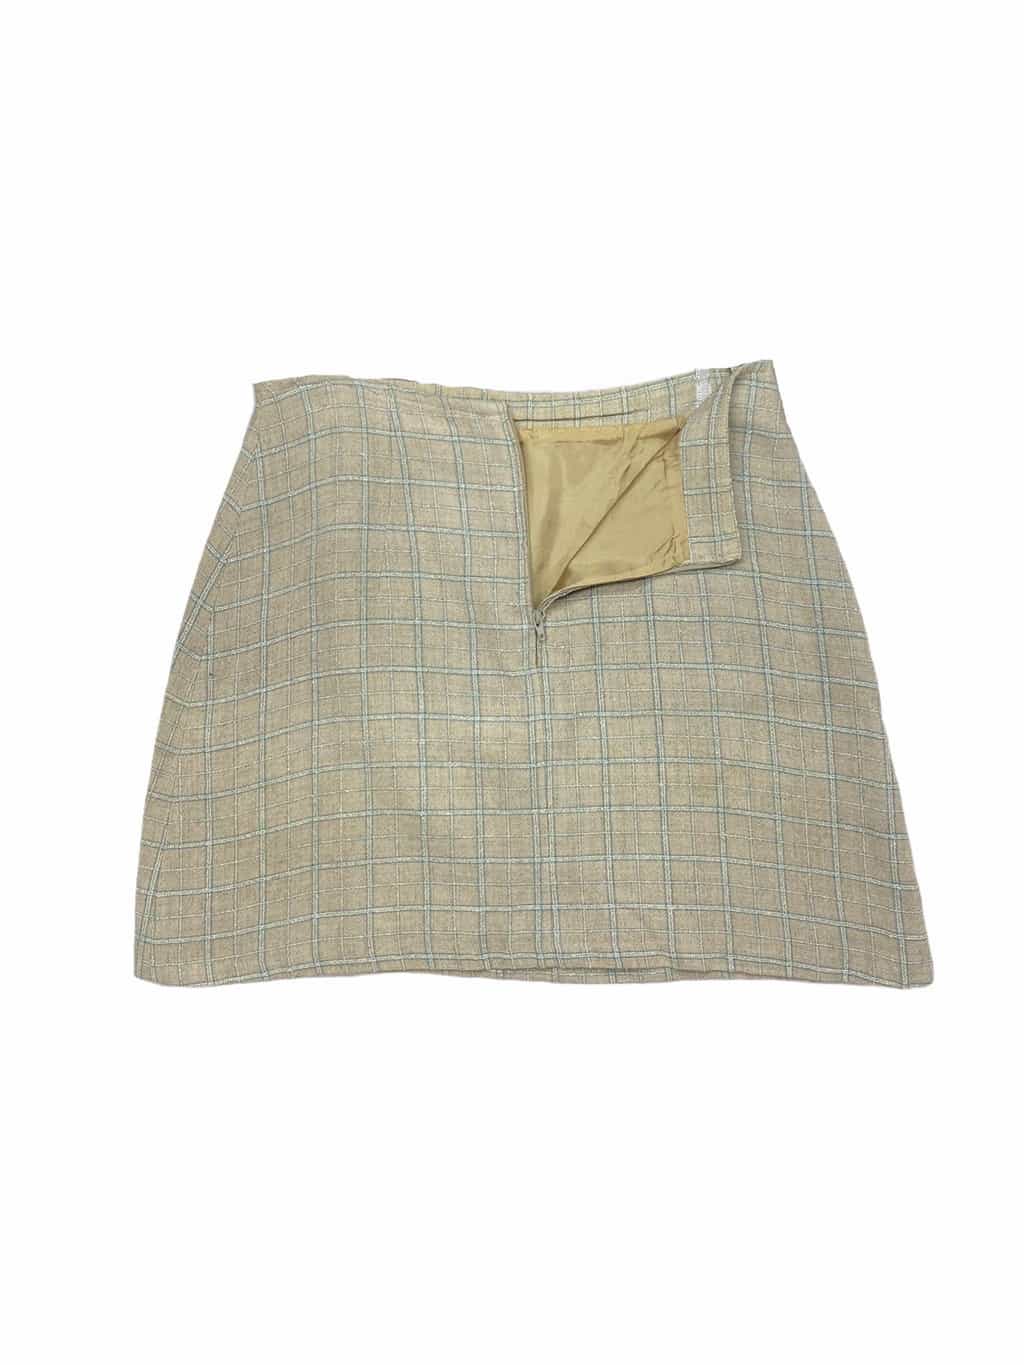 90s Checkered Mini Skirt Beige  White with Button Closure M Waist 29  St Cyr Vintage